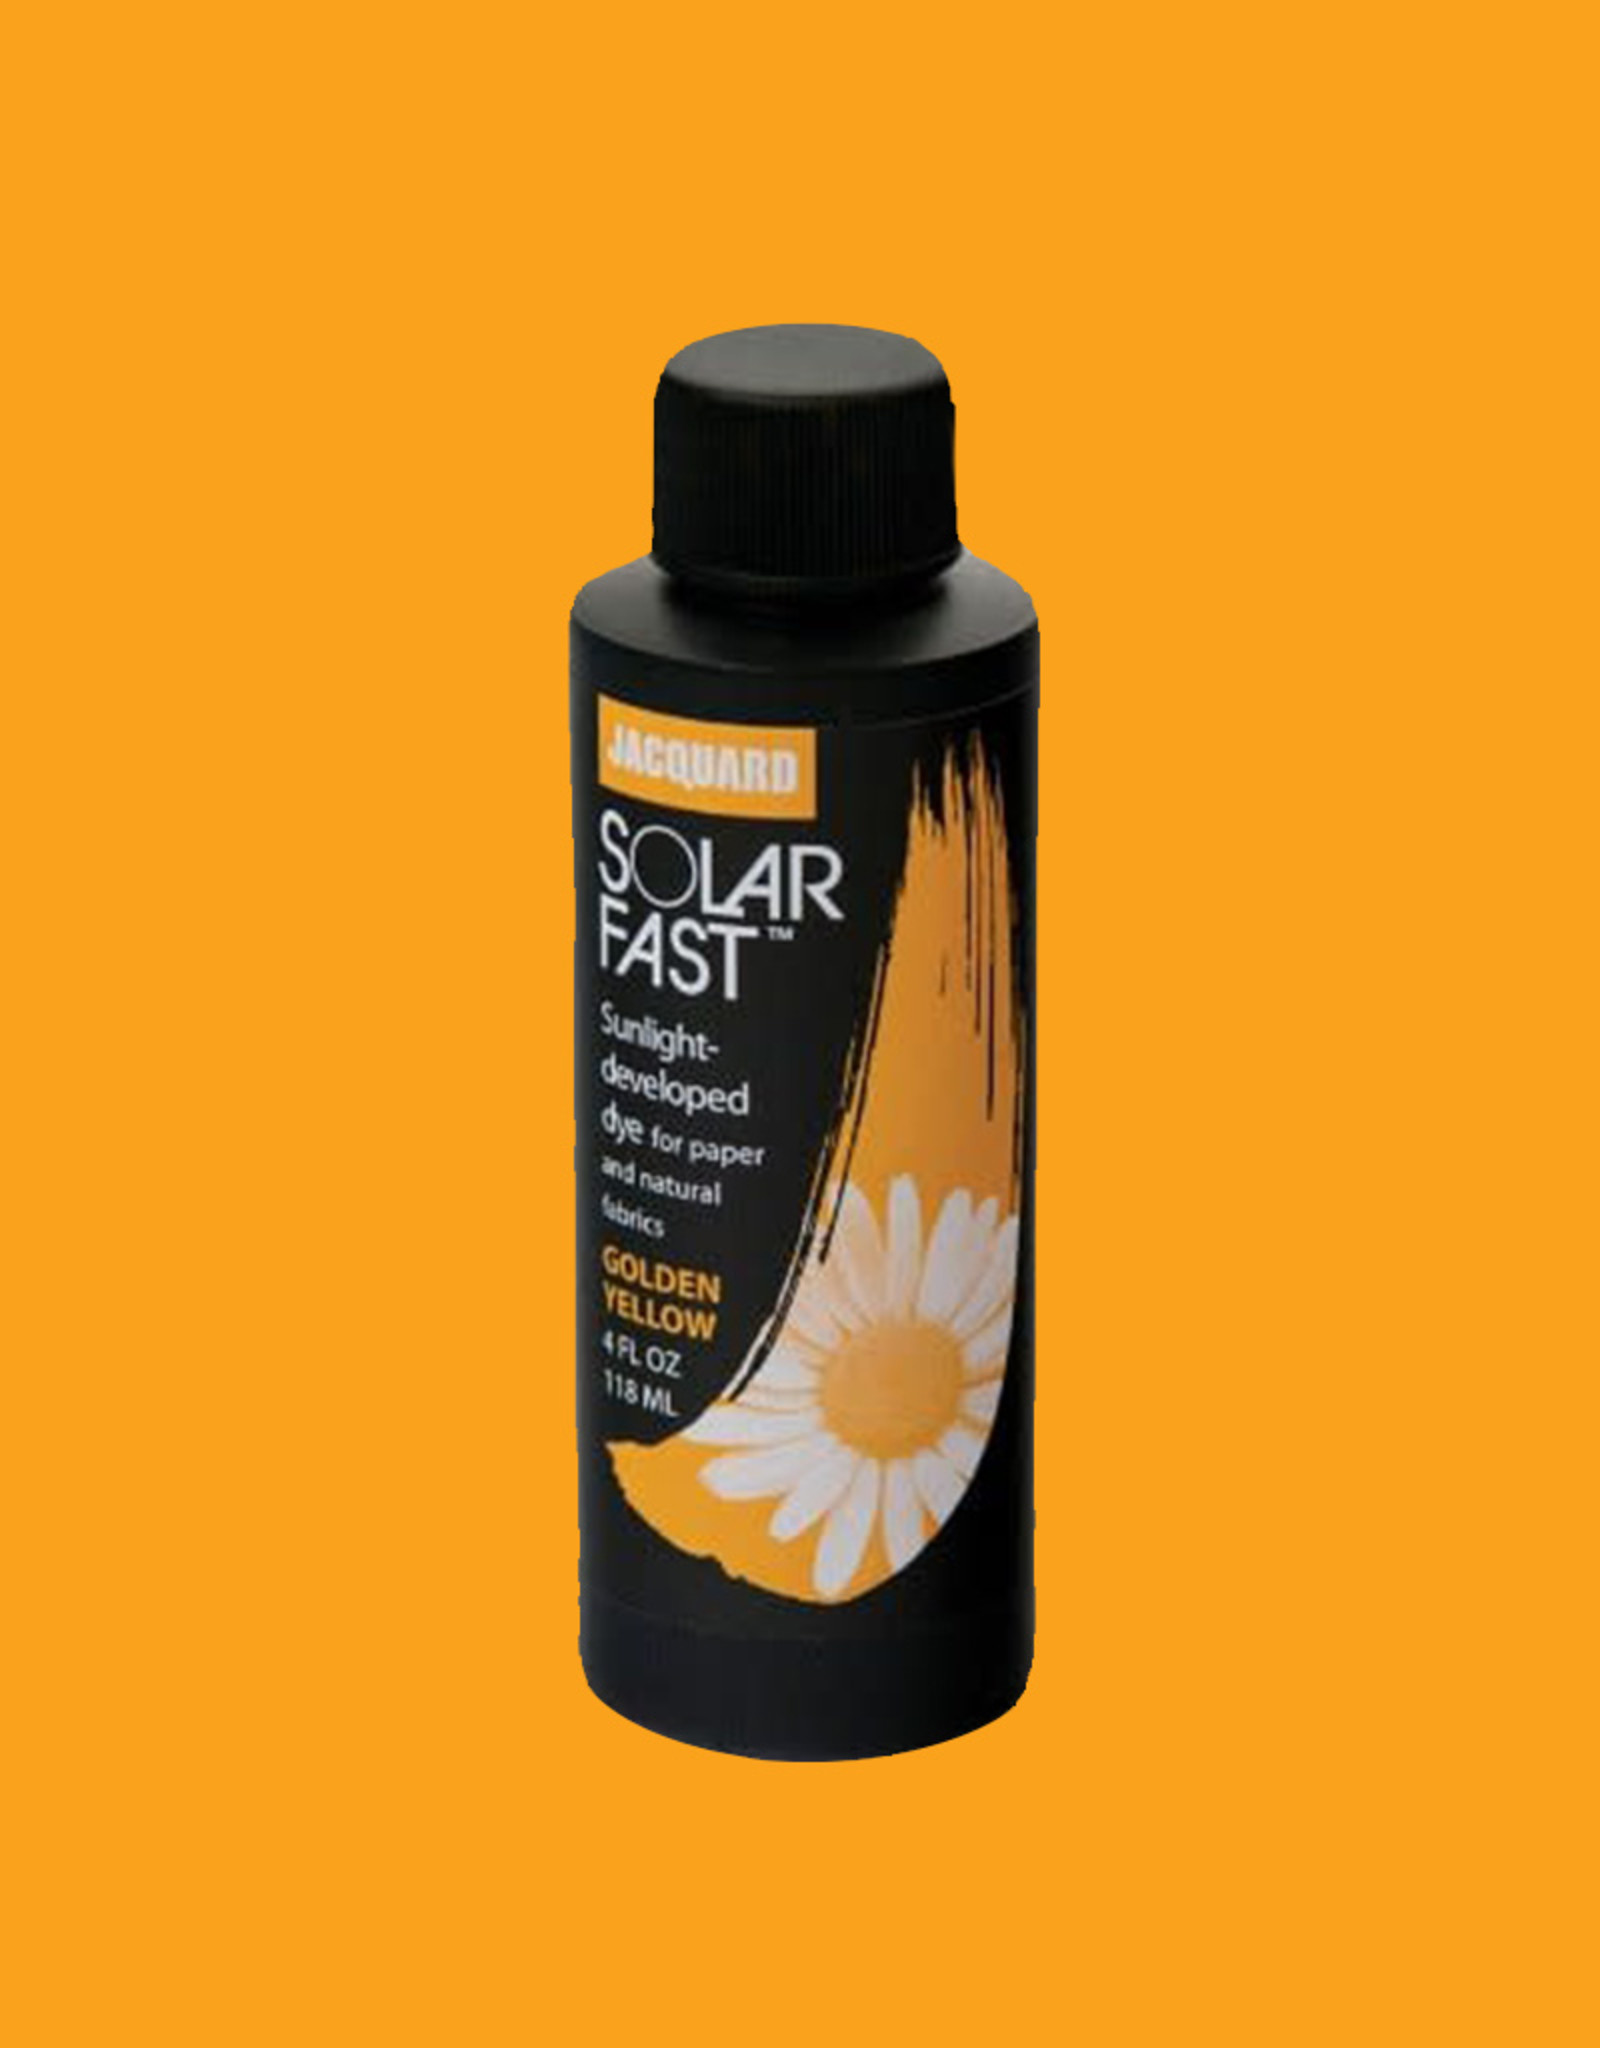 Jacquard SolarFast, la teinture qui se développe au soleil!